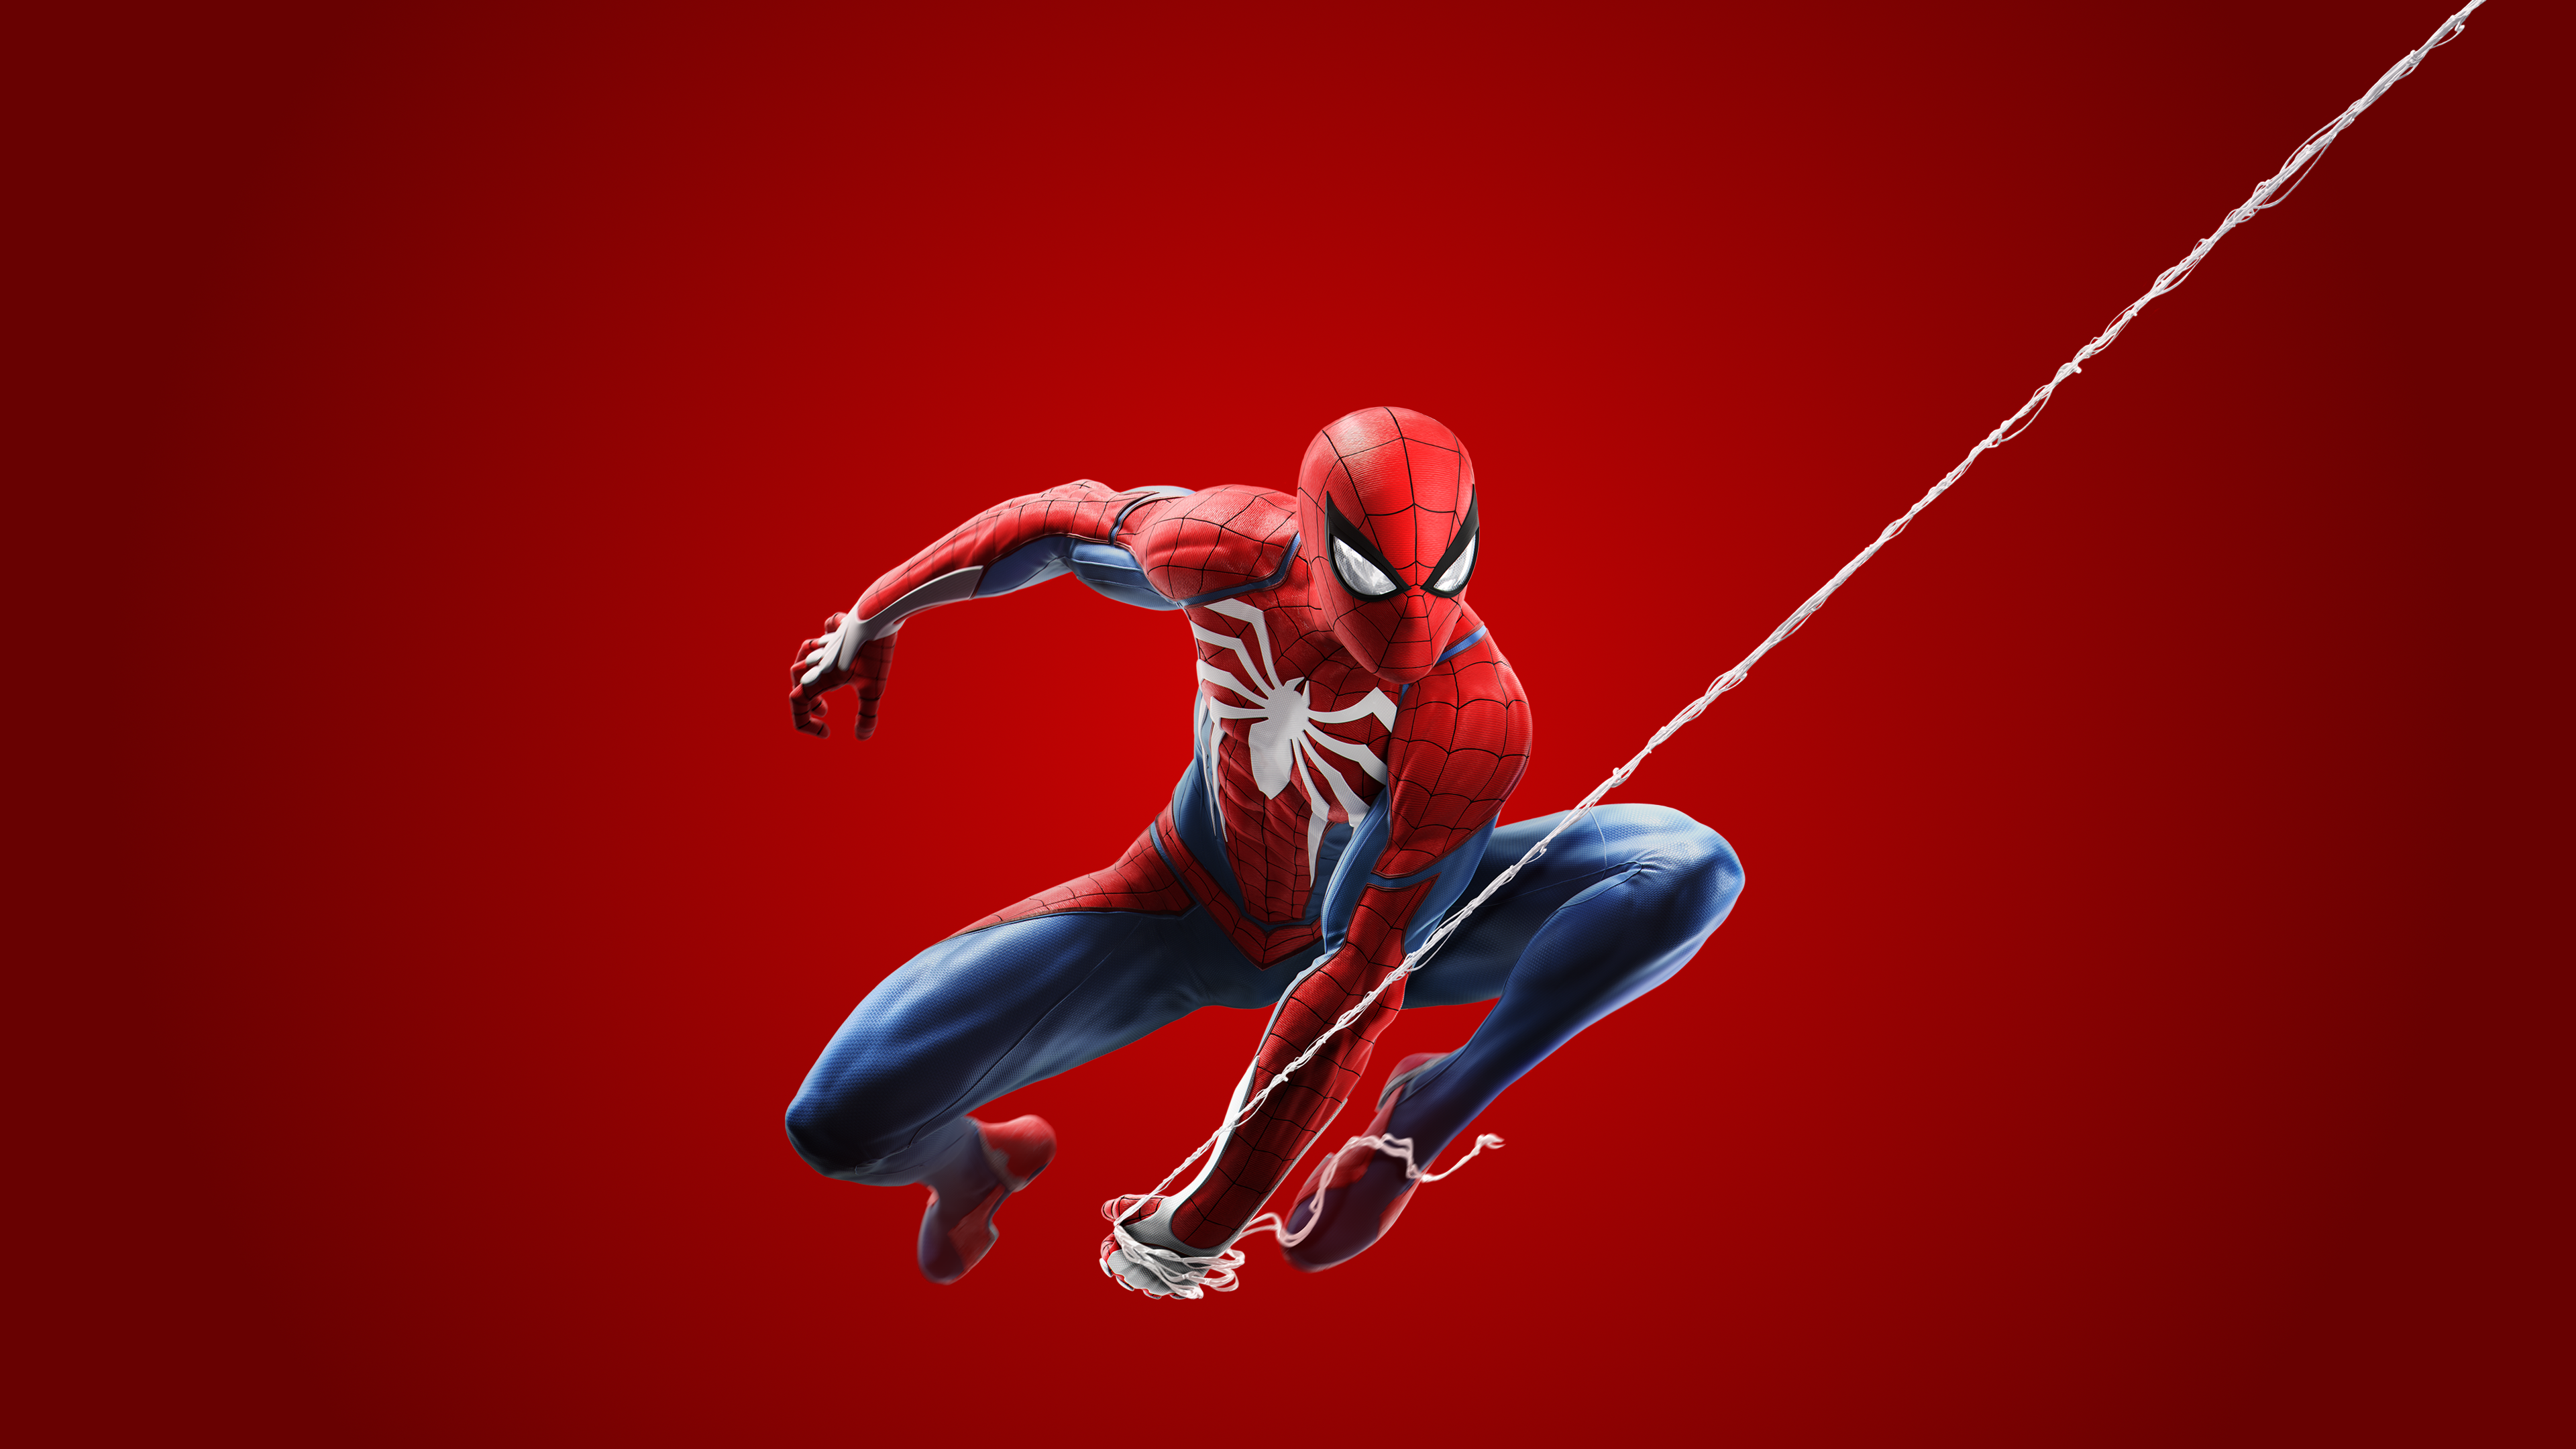 fondos de pantalla de spiderman,hombre araña,superhéroe,personaje de ficción,deporte extremo